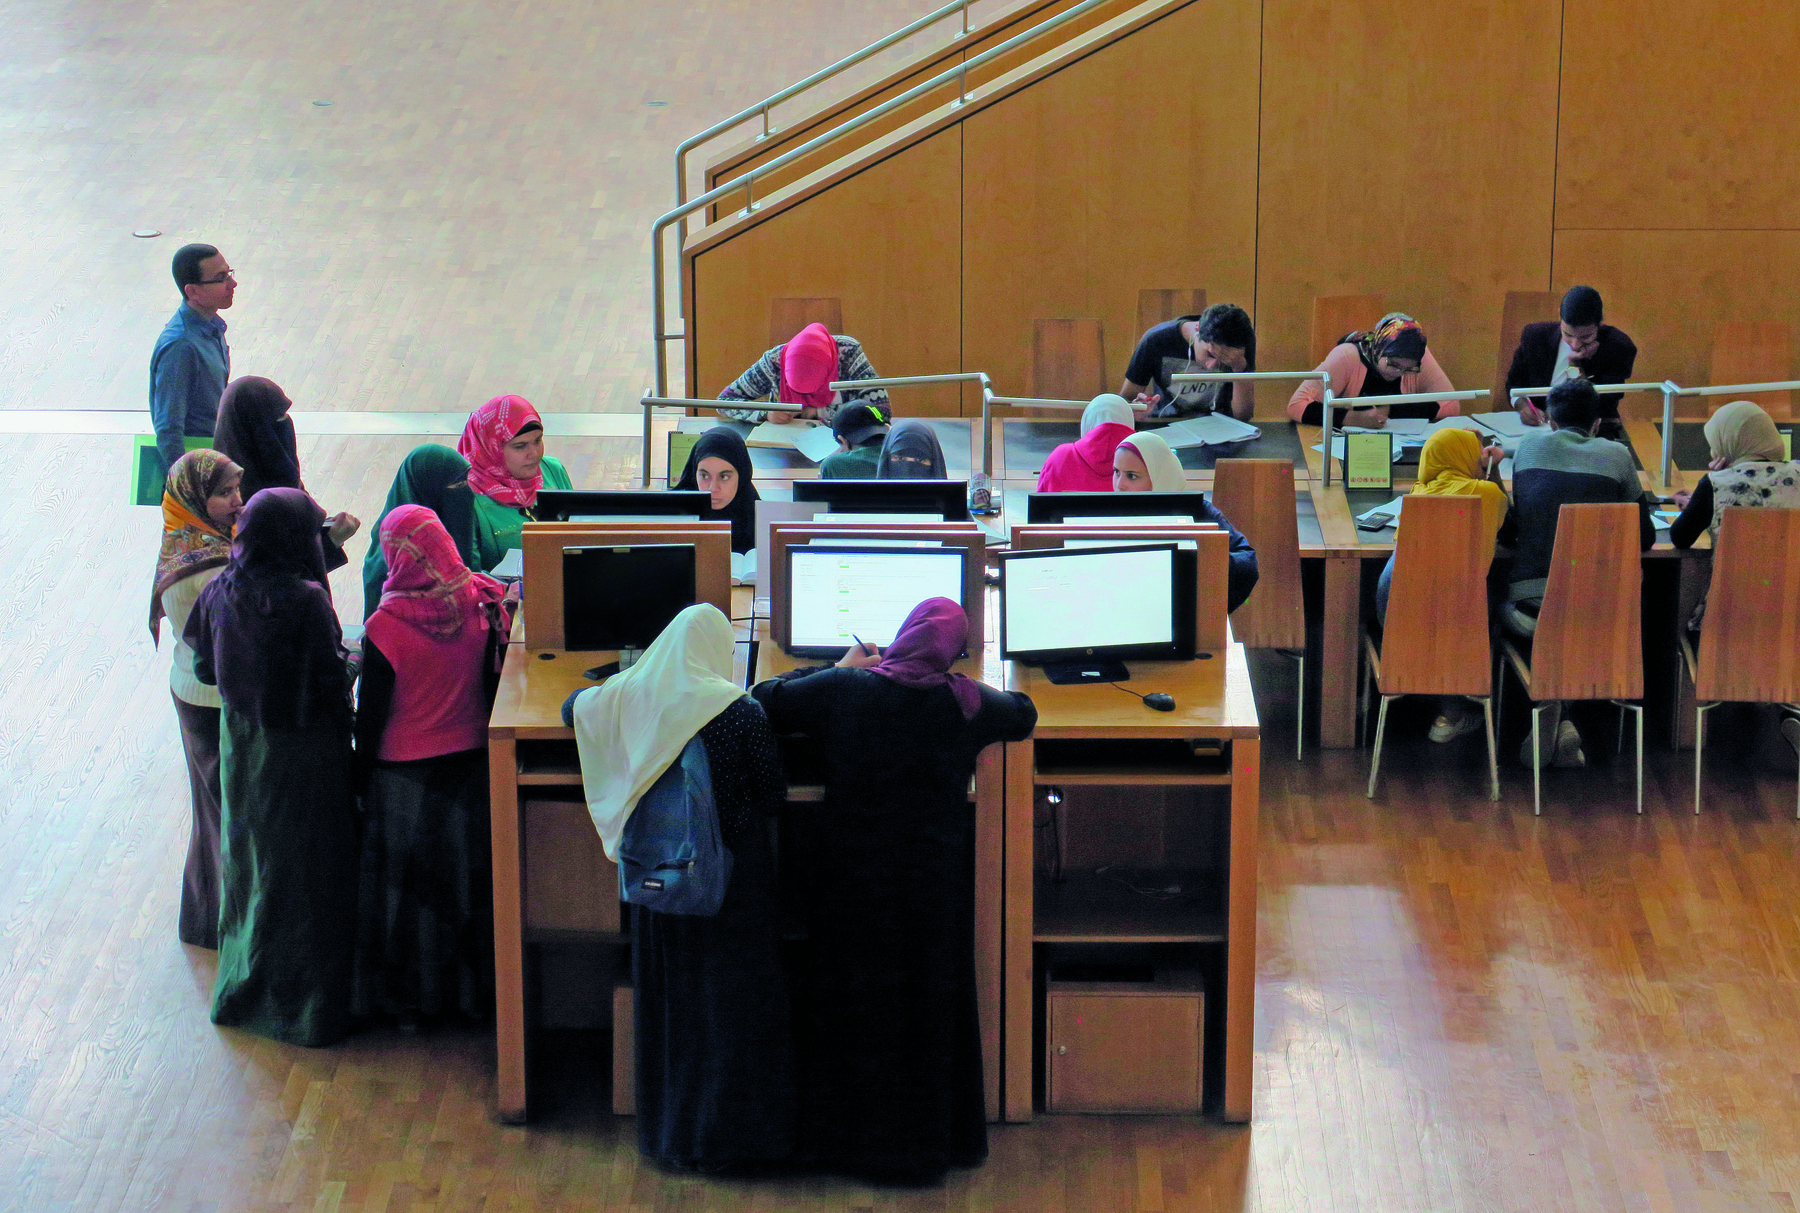 Fotografia. Imagem de estudantes no interior de uma biblioteca, próximas à telas de computadores sobre suportes de madeira. As mulheres utilizam véus de diferentes cores e estampas, que cobrem a cabeça e o pescoço.